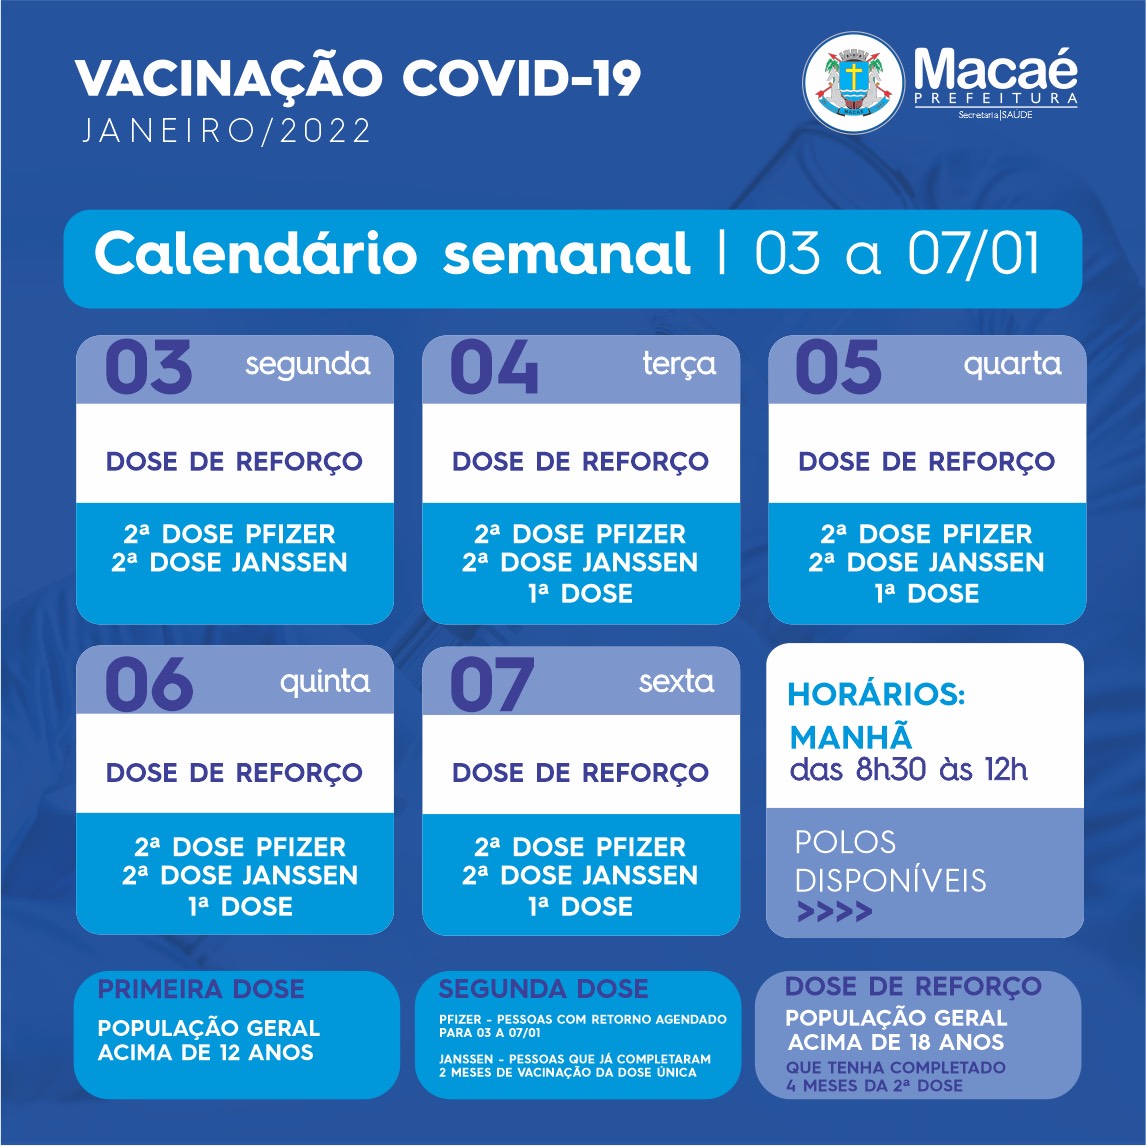 Confira o calendário semanal de vacinação contra a Covid-19 nas redes sociais e site oficial da prefeitura.